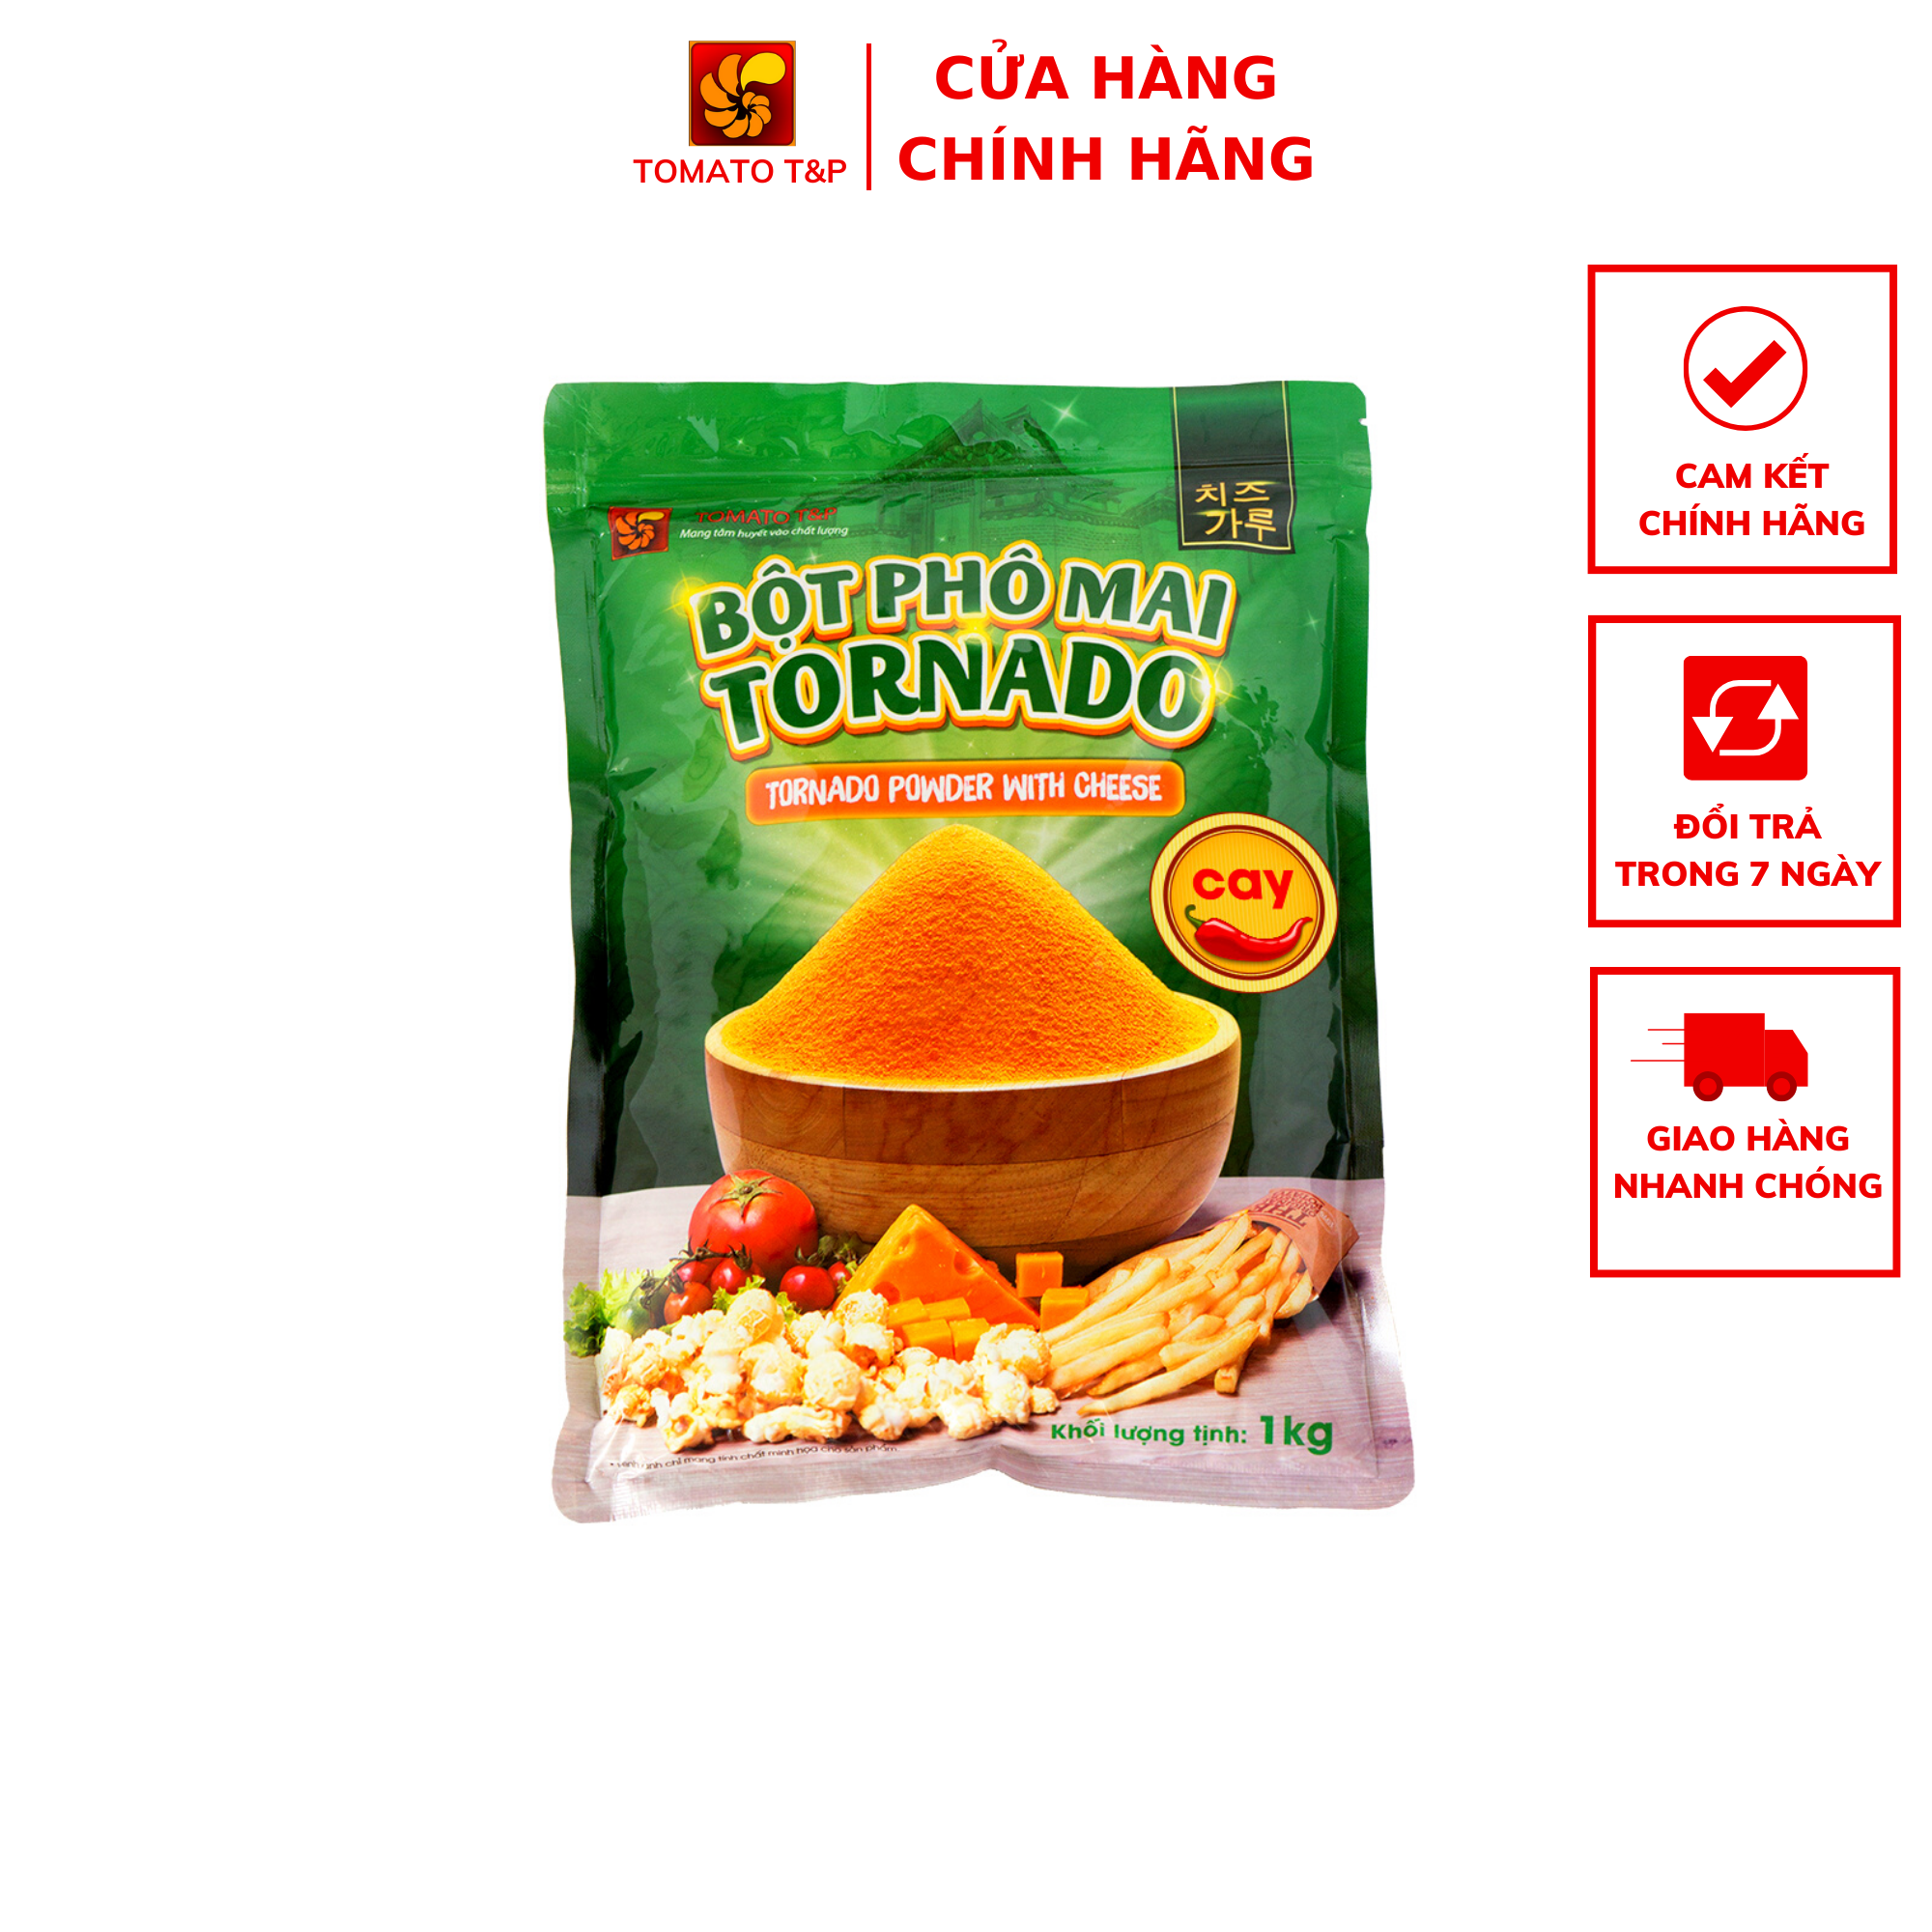 HCMBột phô mai Tornado vị cay - Gói 1kg - Tomato T&P